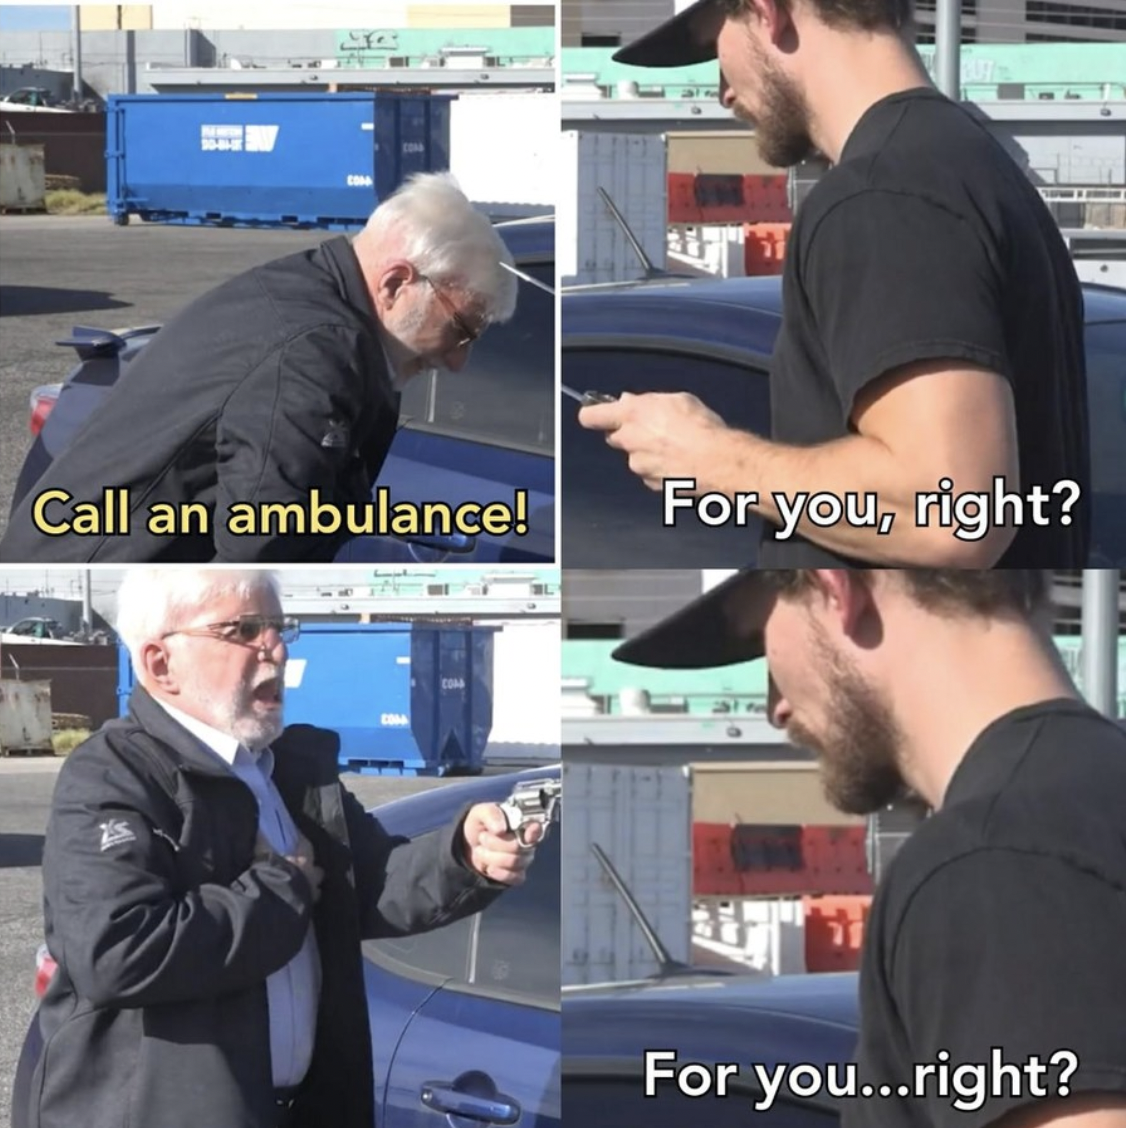 call an ambulance but not for me meme - Call an ambulance! For you, right? For you...right?